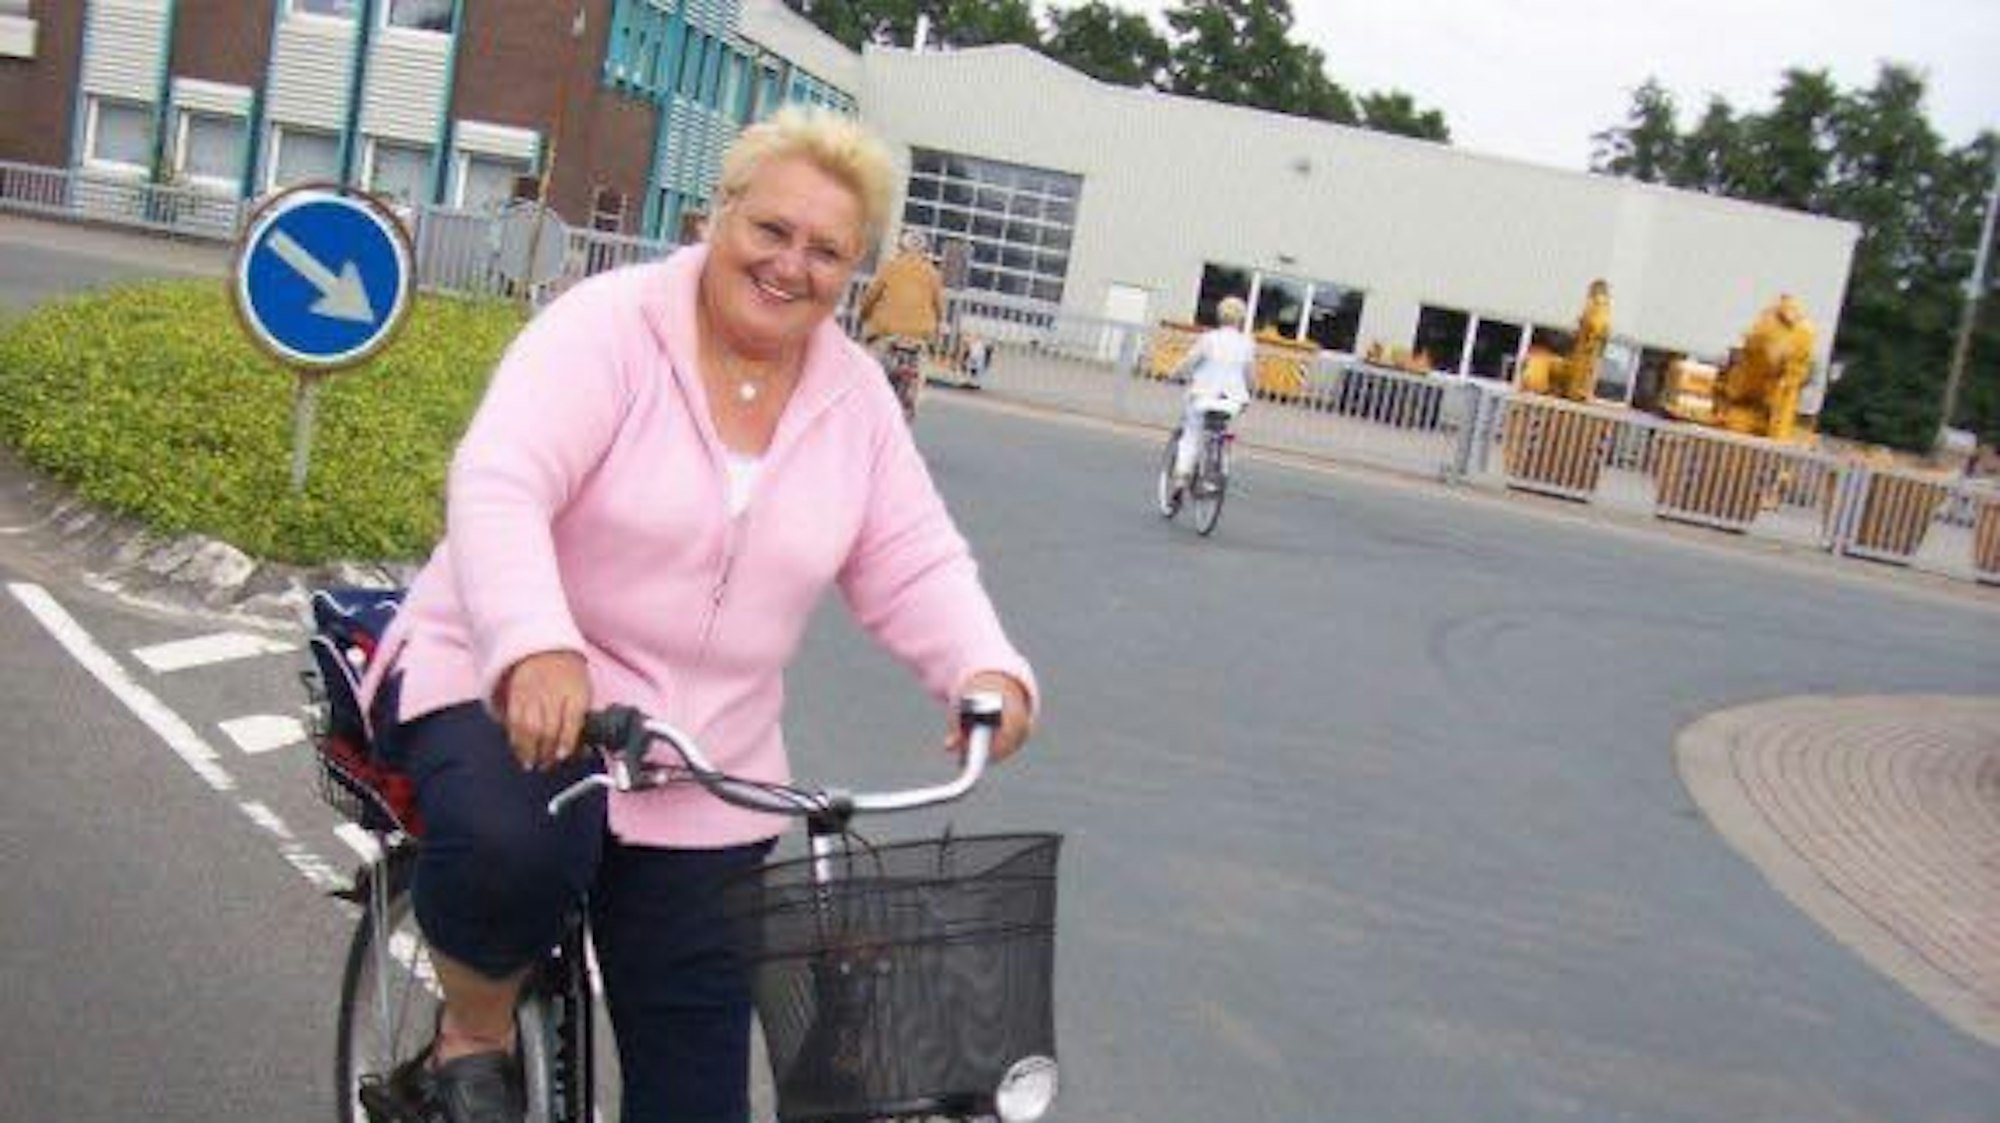 Bis zu ihren Knie-OPs war Hedwig Kampshoff immer mit dem Rad unterwegs.